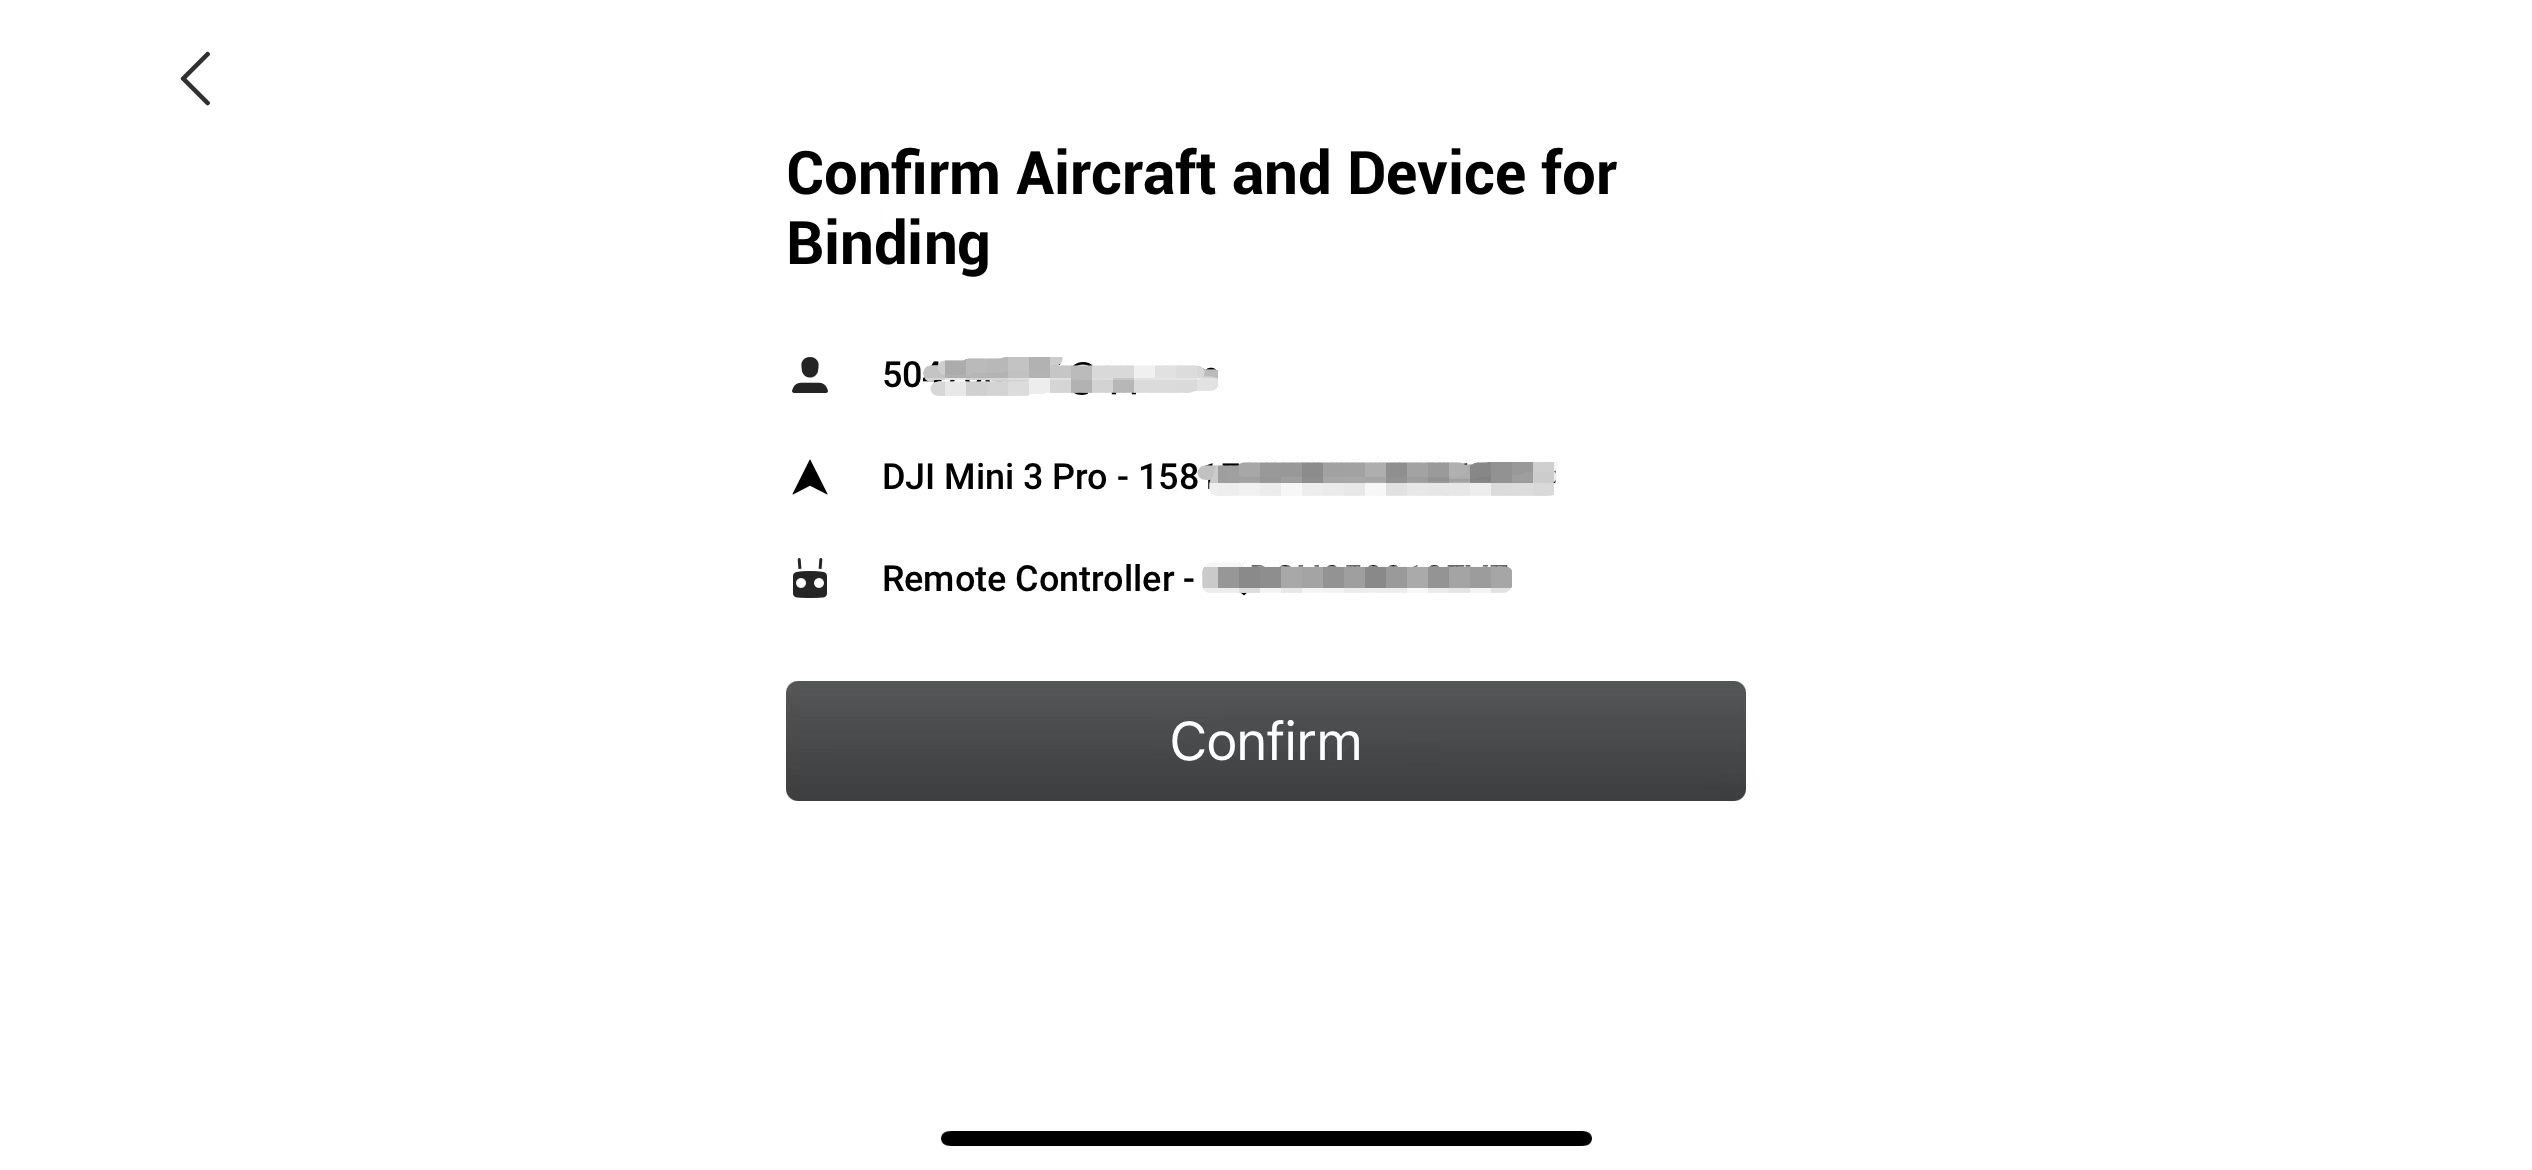 Bekräfta flygplan och enhet för bindning. Användare, DJI Mini 3 Pro och fjärrkontroll visas med delvis maskerade serienummer. En stor knapp med texten "Confirm" finns längst ner.